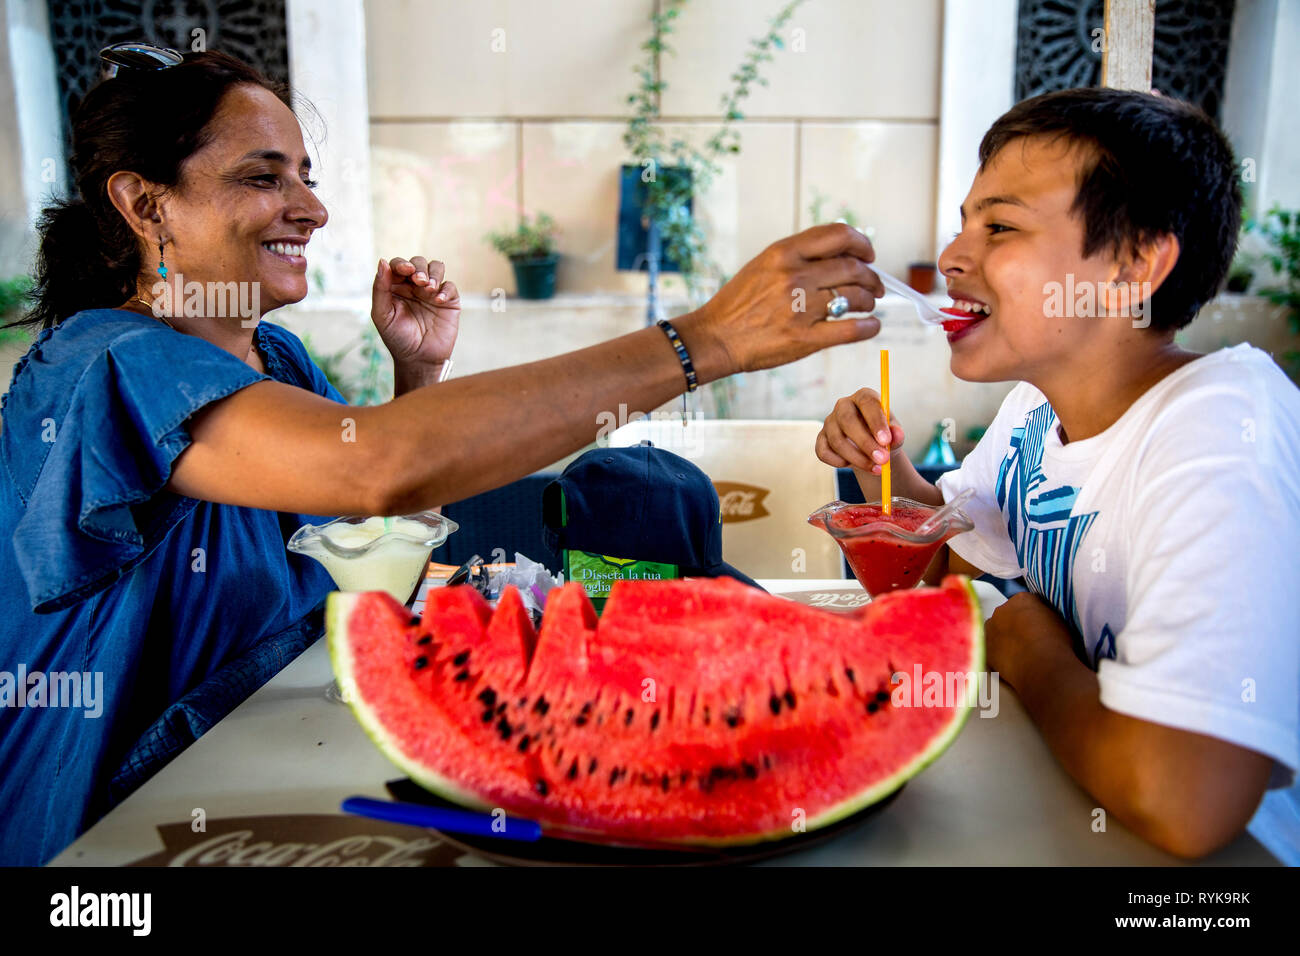 Mère et son eating watermelon à Palerme, Sicile (Italie). Banque D'Images